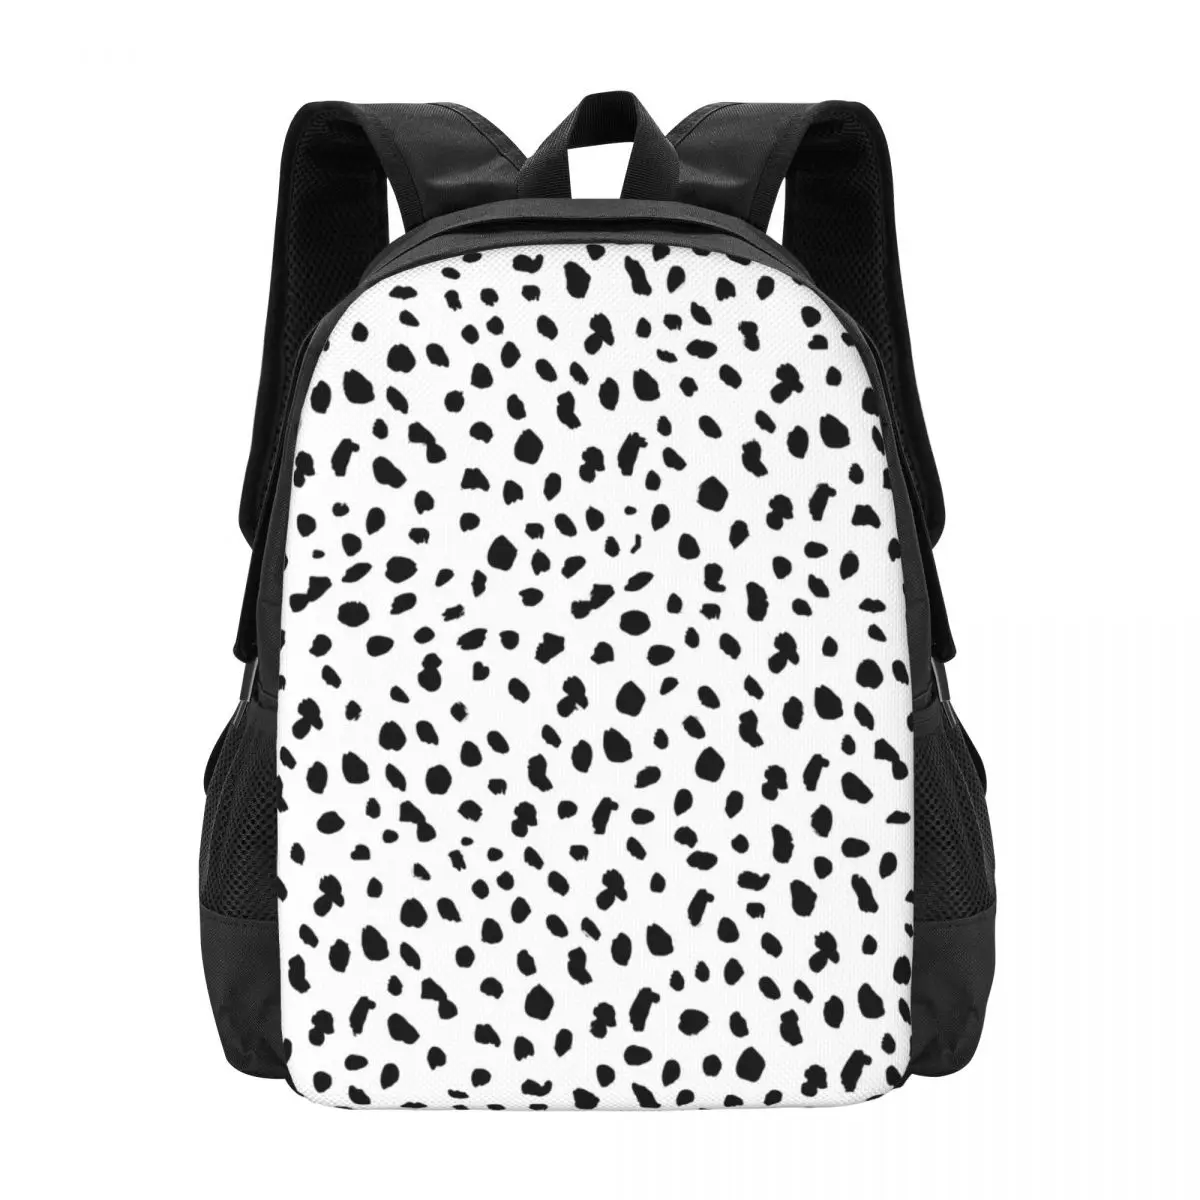 

Рюкзак с принтом далматинской собаки, черно-белый рюкзак для трекинга, школьные сумки для студентов, большой рюкзак высокого качества